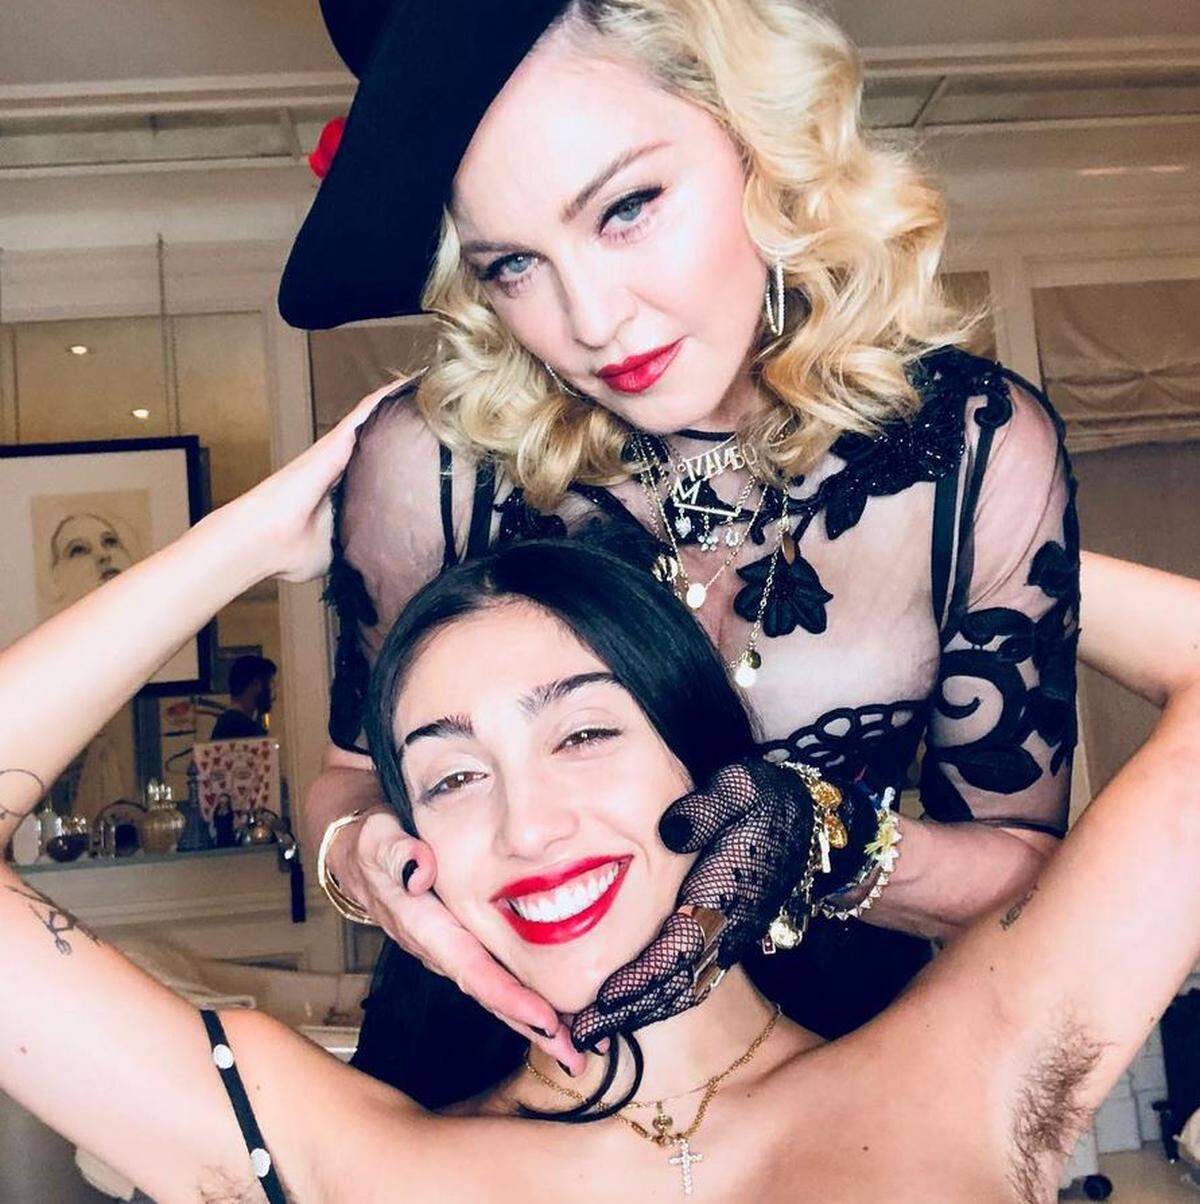 Popstar Madonna und ihre 21-jährige Tochter Lourdes "Lola" Ciccone Leon feierten gemeinsam Silvester - das feierliche Instagram-Posting nutzten einige Menschen allerdings als Anlass, um über Leons Achselhaare herzuziehen. "Bring sie dazu, sich zu rasieren, es ist ekelhaft", schrieb "ms_cammarata" darunter. "nanafromparis" entgegnete: "Es ist natürlich, finde dich damit ab."